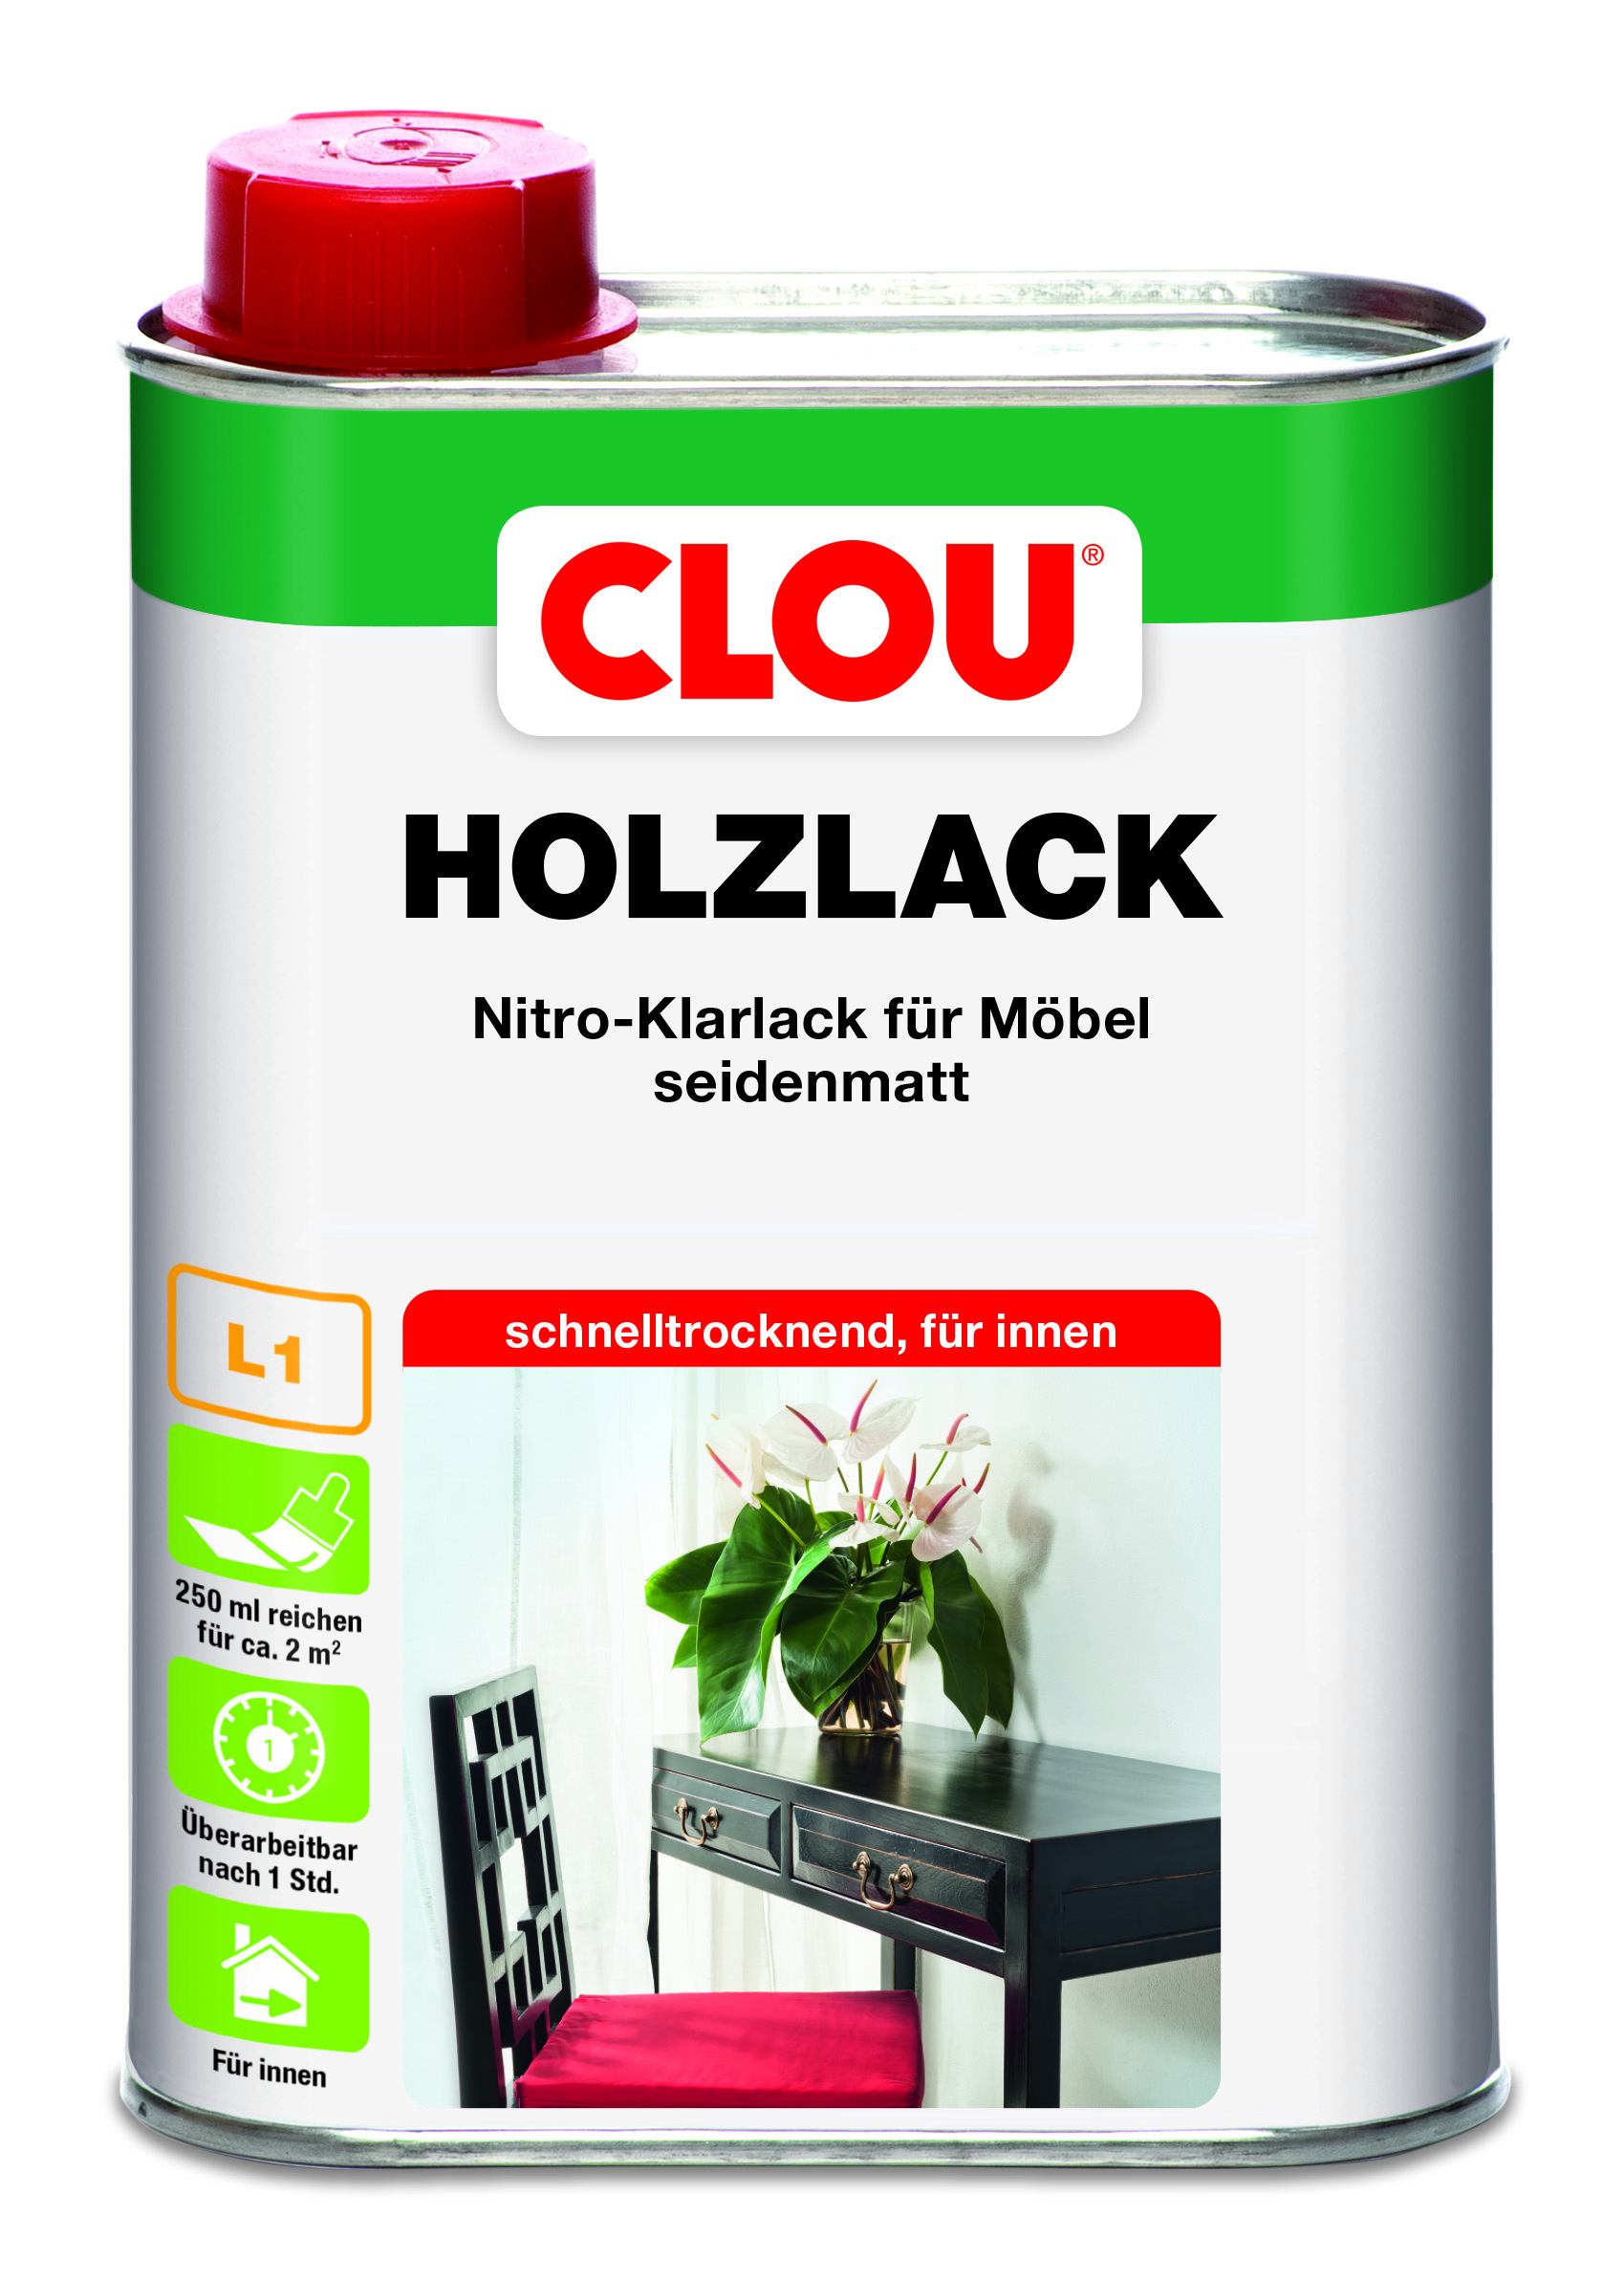 CLOU Holzlack L1, 250 ml - Farblos, seidenmatt